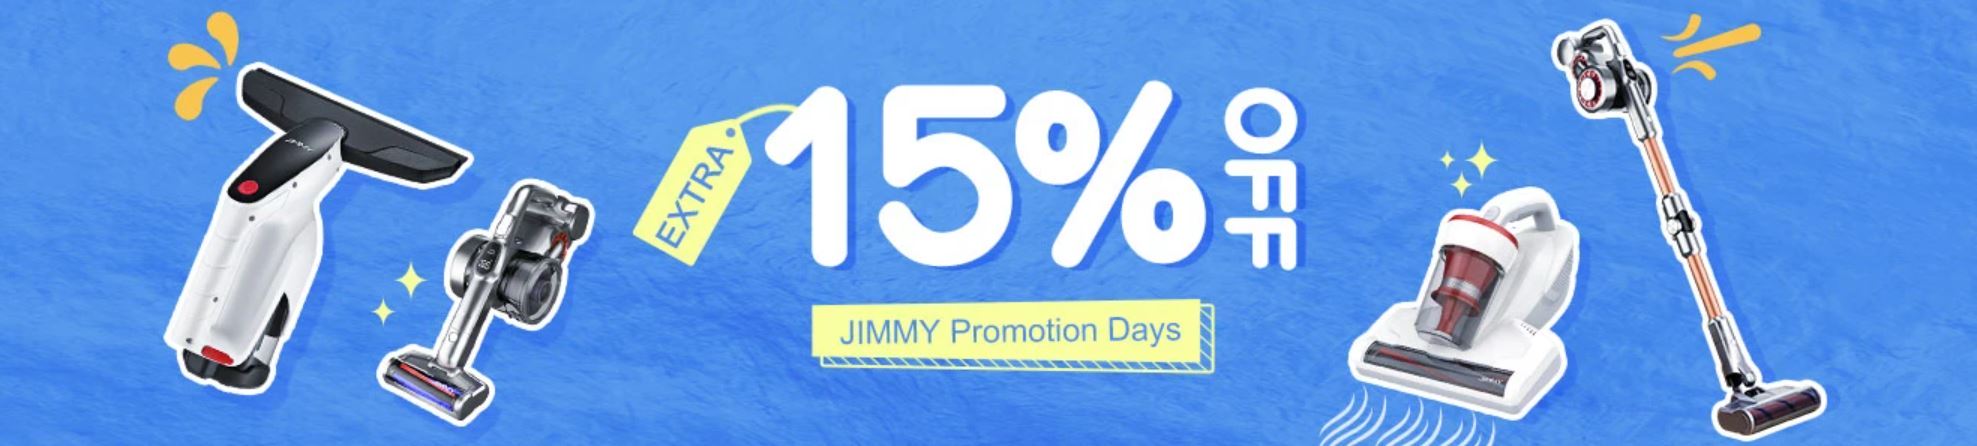 promocja produktów marki Jimmy w Banggood